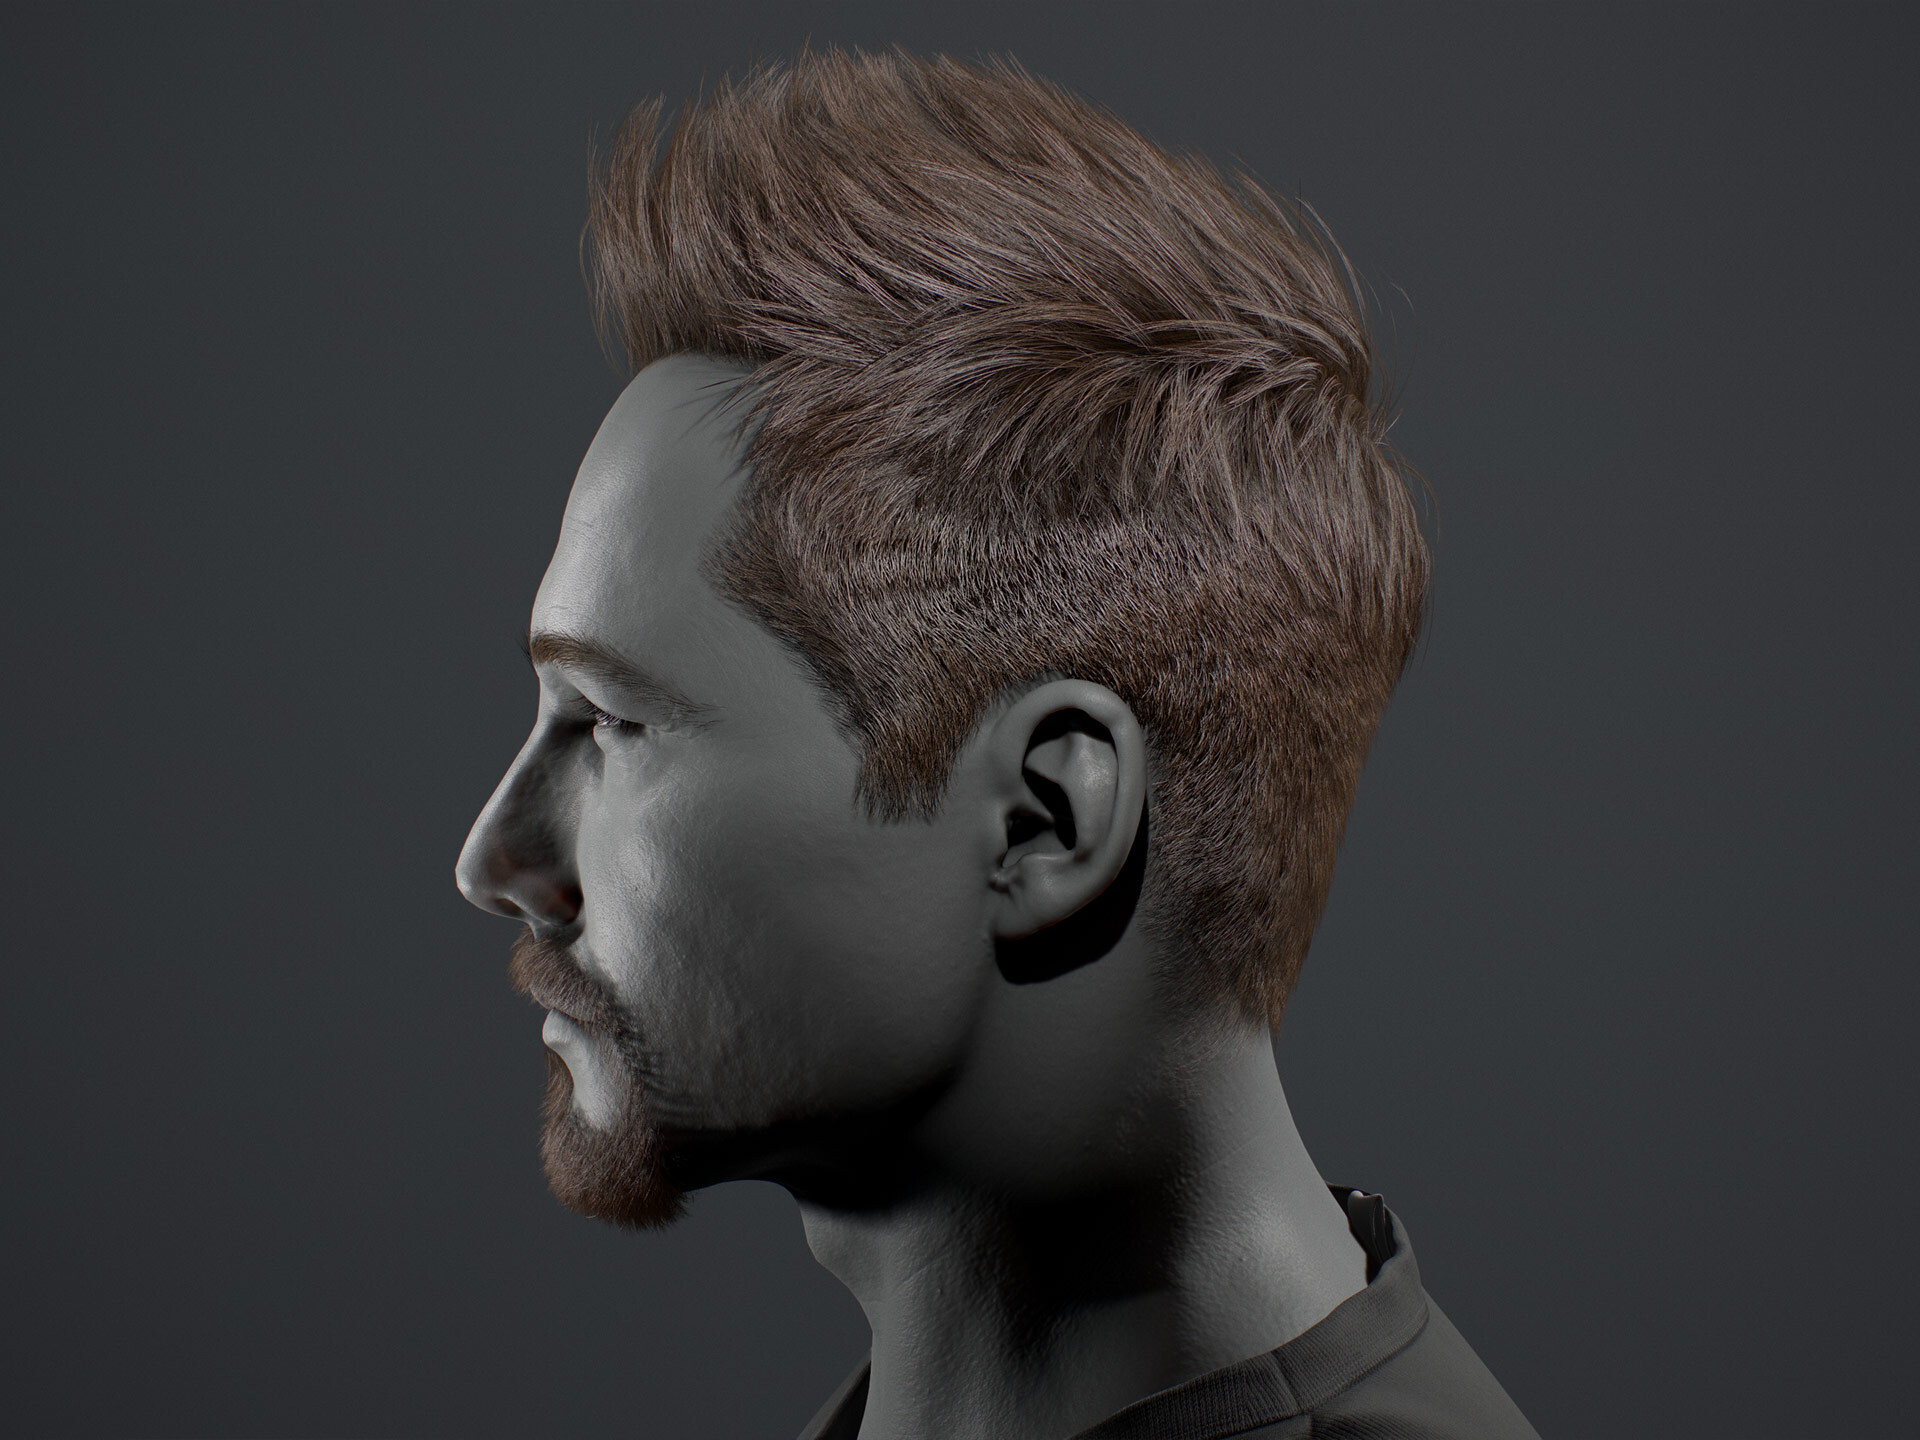 Short Haircut 3D model